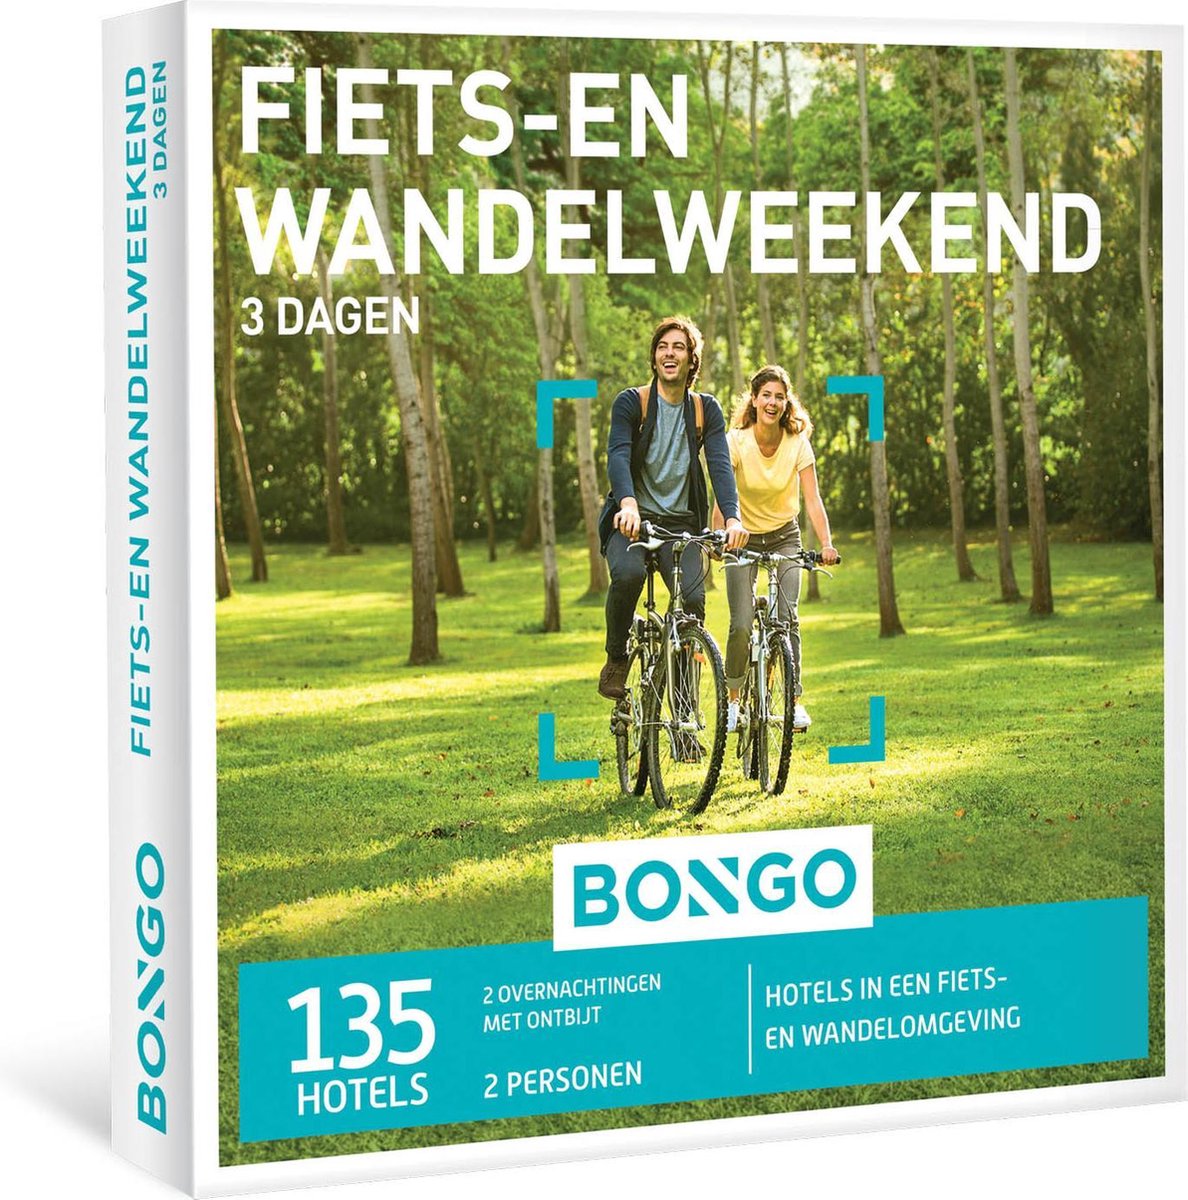 Fiets-en Wandelweekend, 3 dagen - Bongo Bon | bol.com